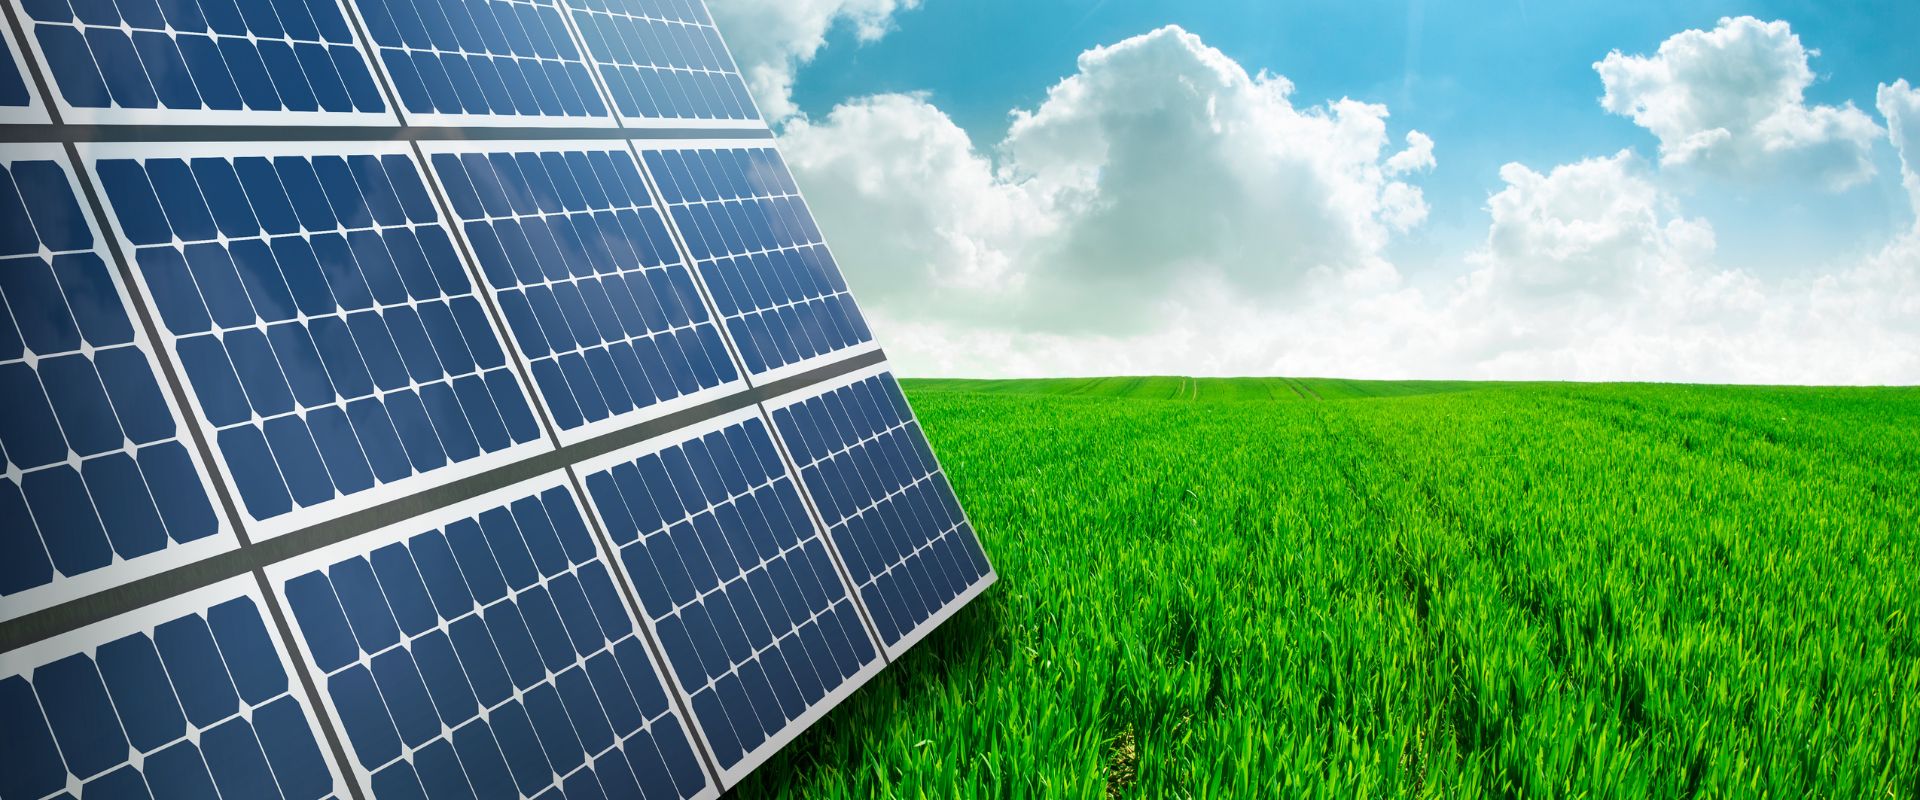 impianti fotovoltaici roma, pannelli fotovoltaici, ups, gruppi di continuit, stazioni di energia, trasformatori, stabilizzatori, impianti elettrici, silvestrini, sistemi di protezione